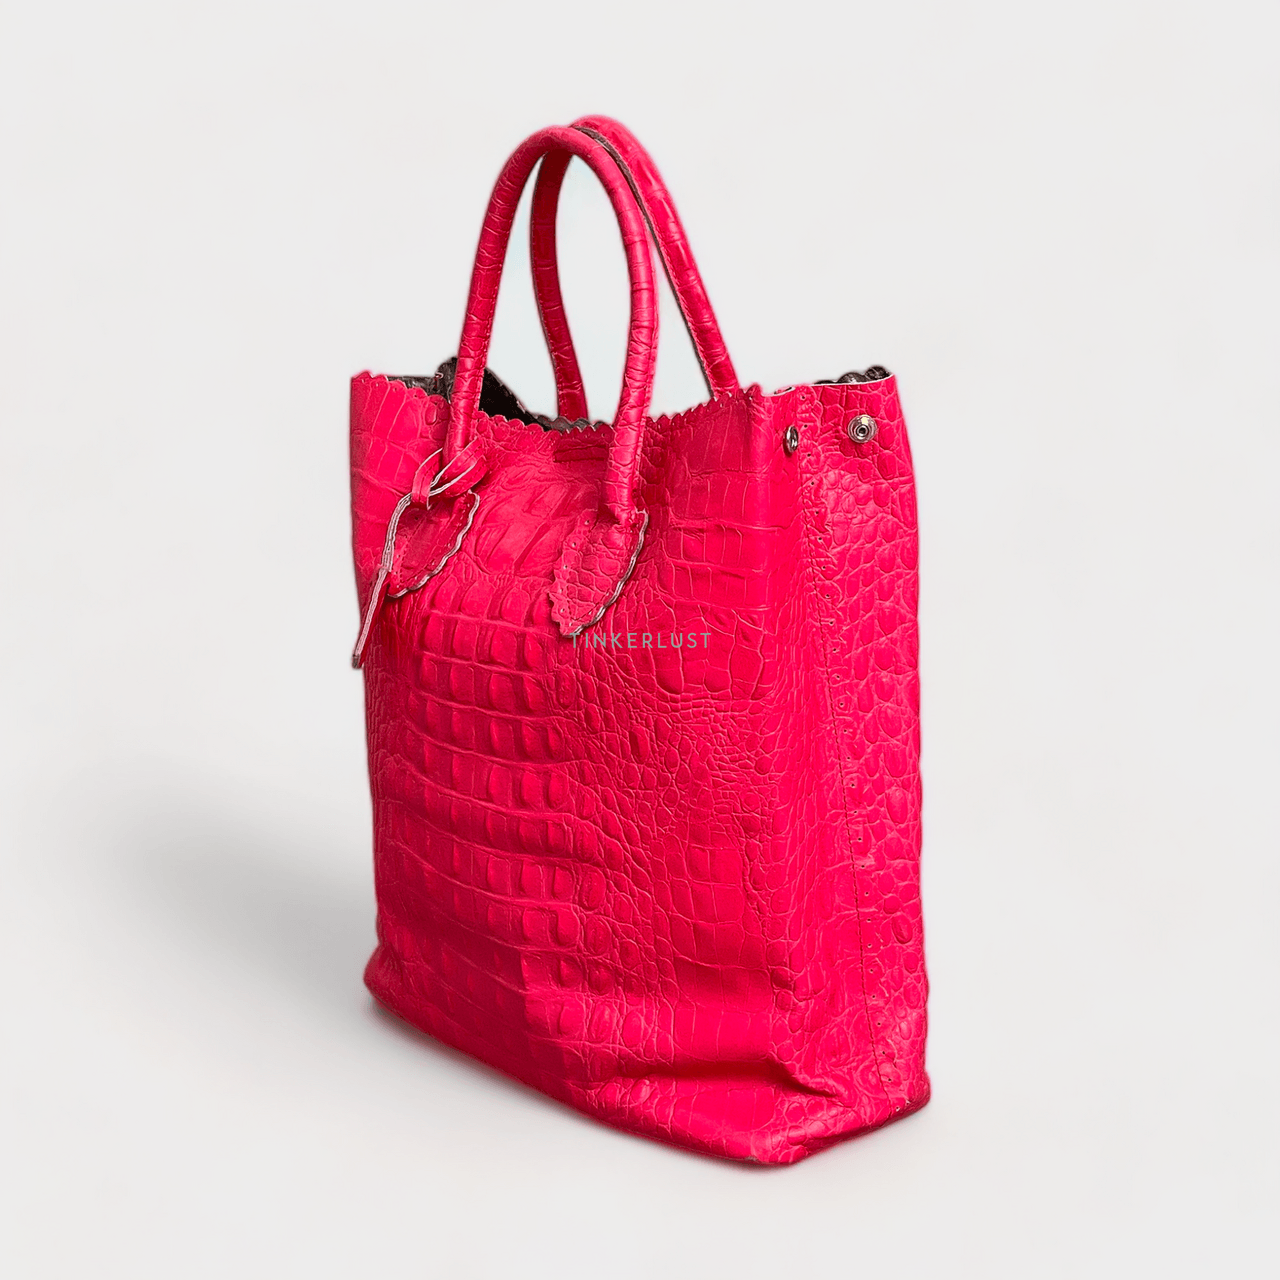 Furla Pink Tote Bag